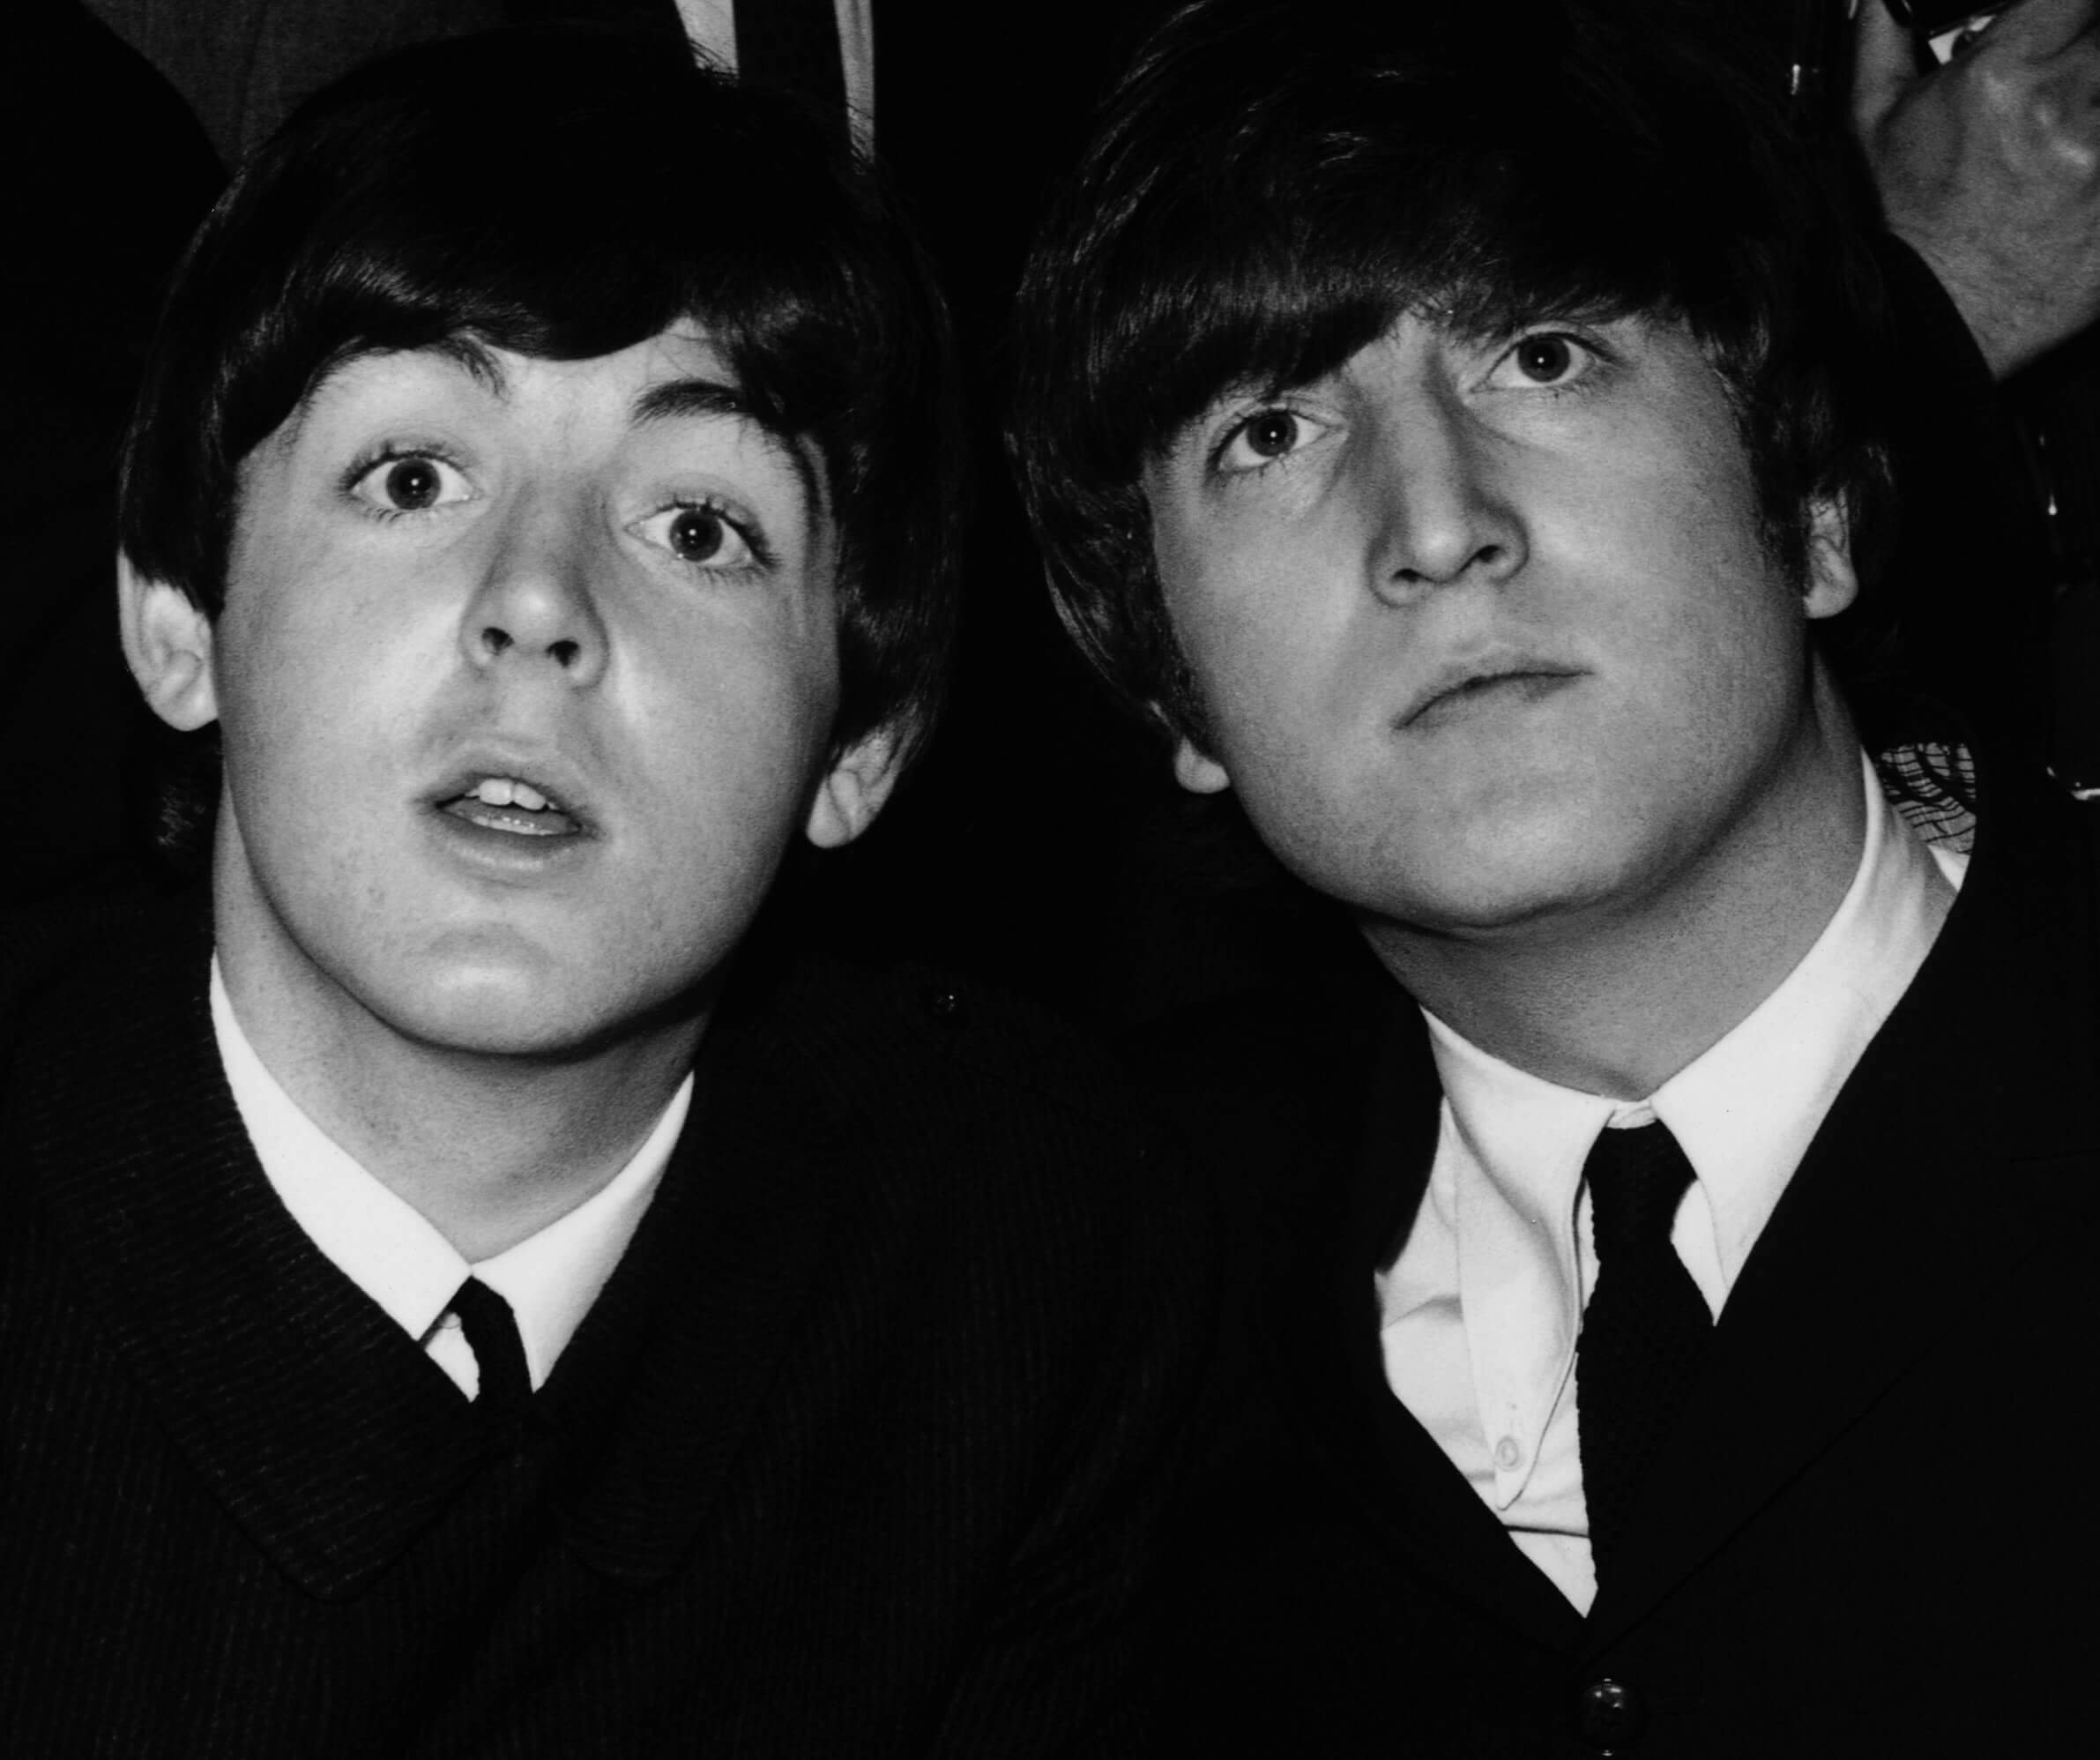 Paul McCartney and John Lennon in black-and-white